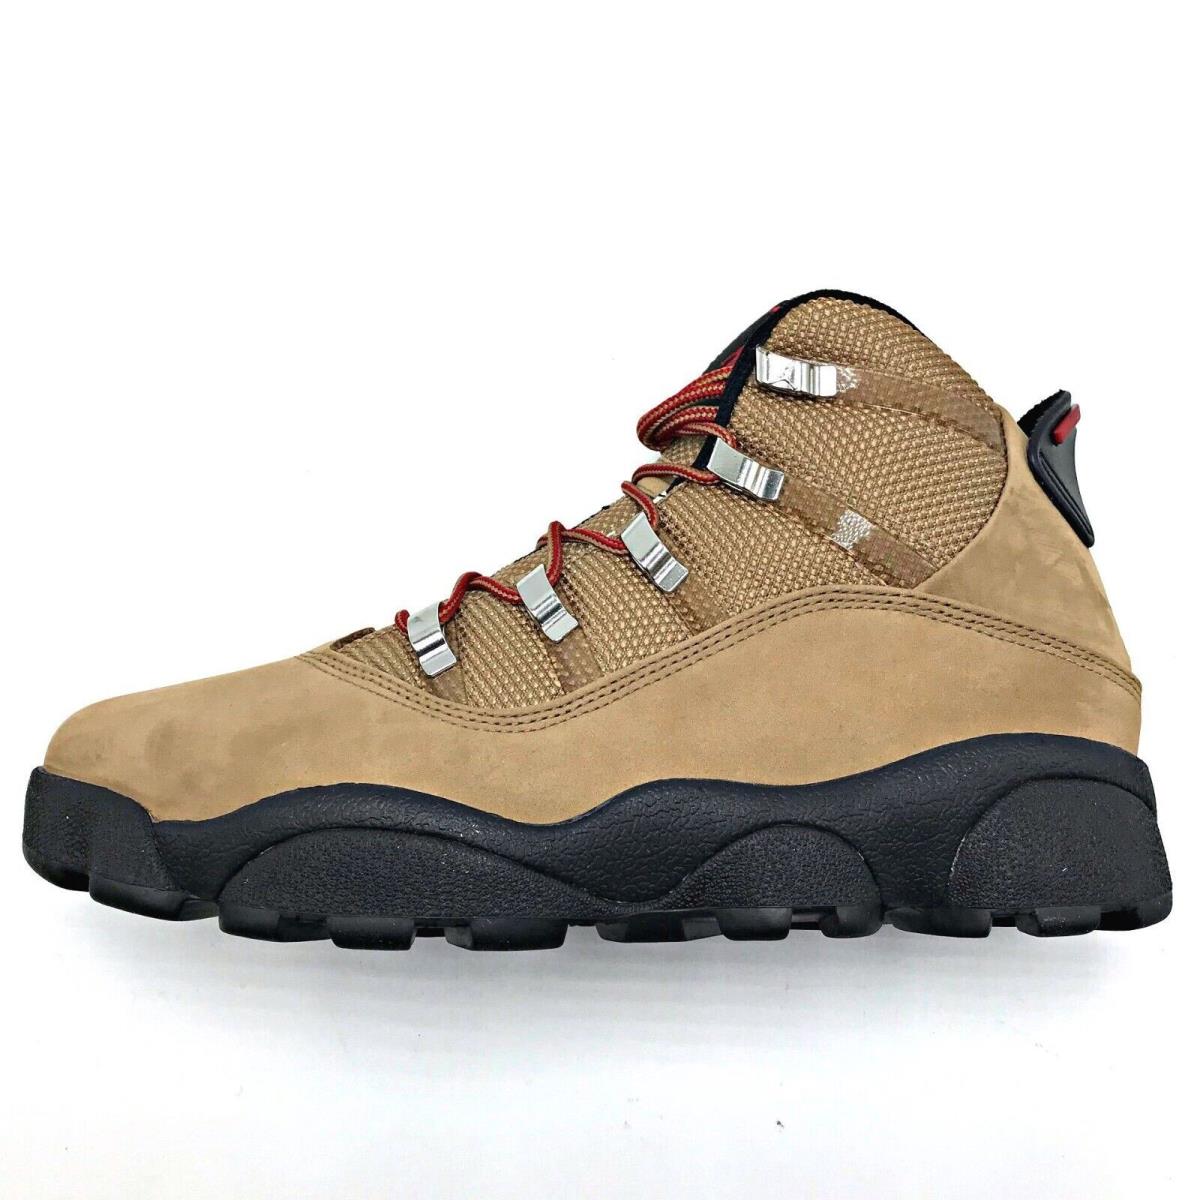 Men Nike Air Jordan 6 Rings Winterized Boots Brown FV3826 202 - Brown